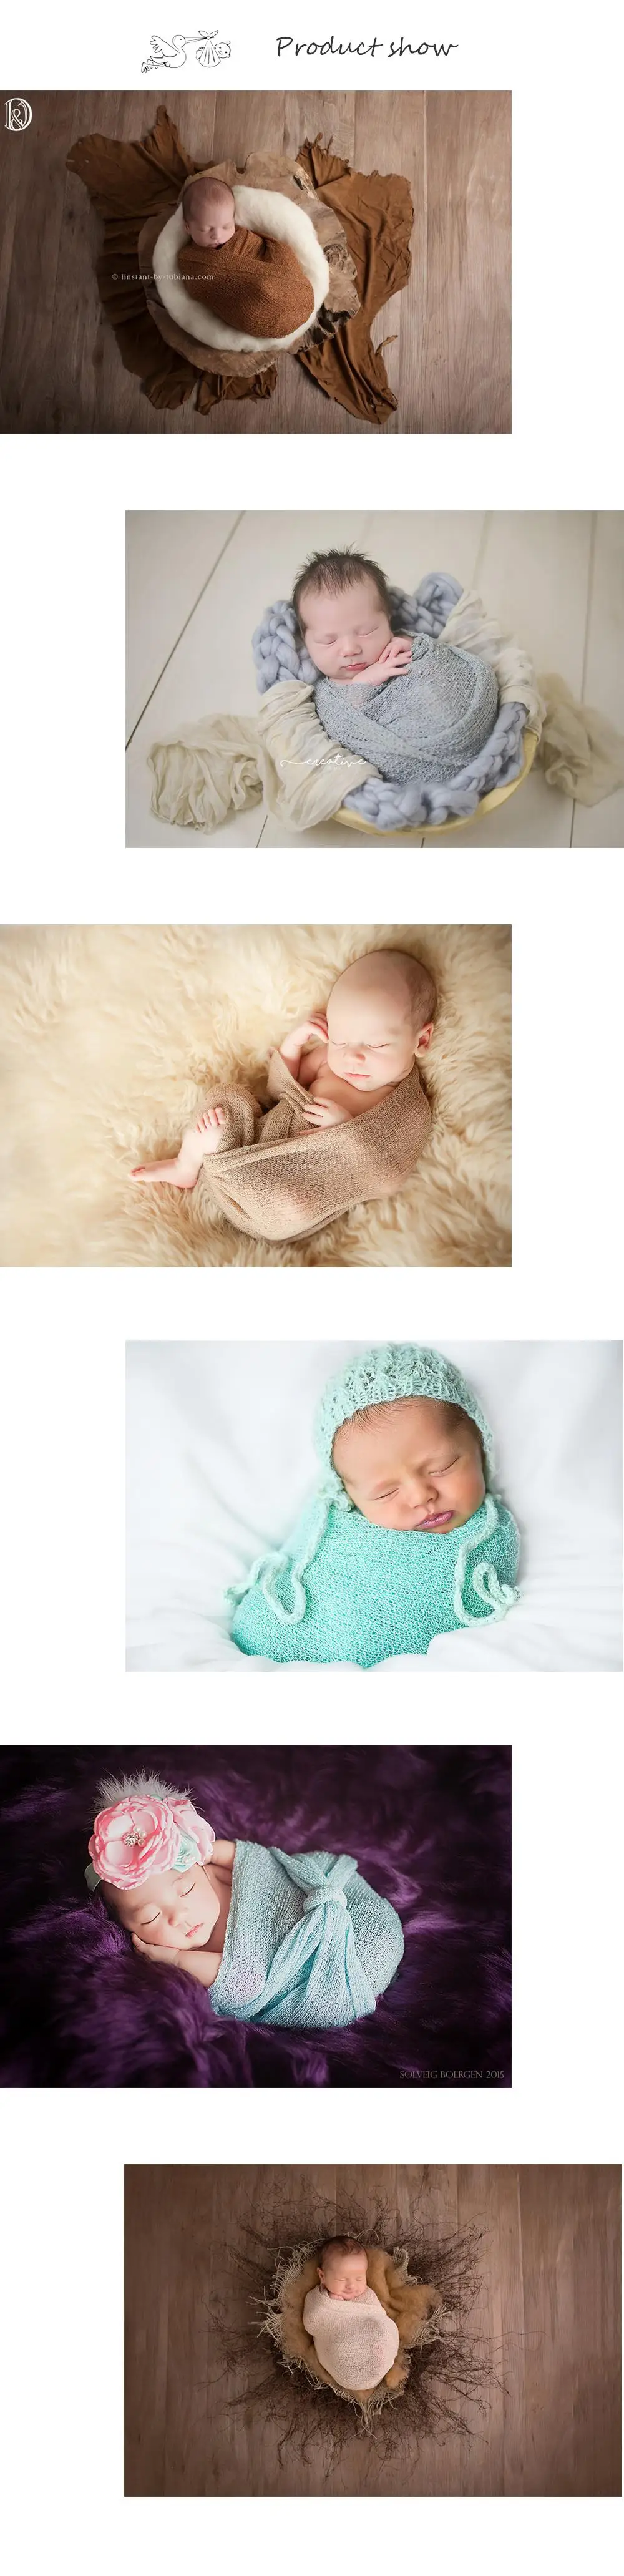 10 шт./лот смешивания цвет мягкий стрейч вязать обертывания для новорожденных подставки фотографий пеленки для фотографирования новорожденных BABY SHOWER подарок